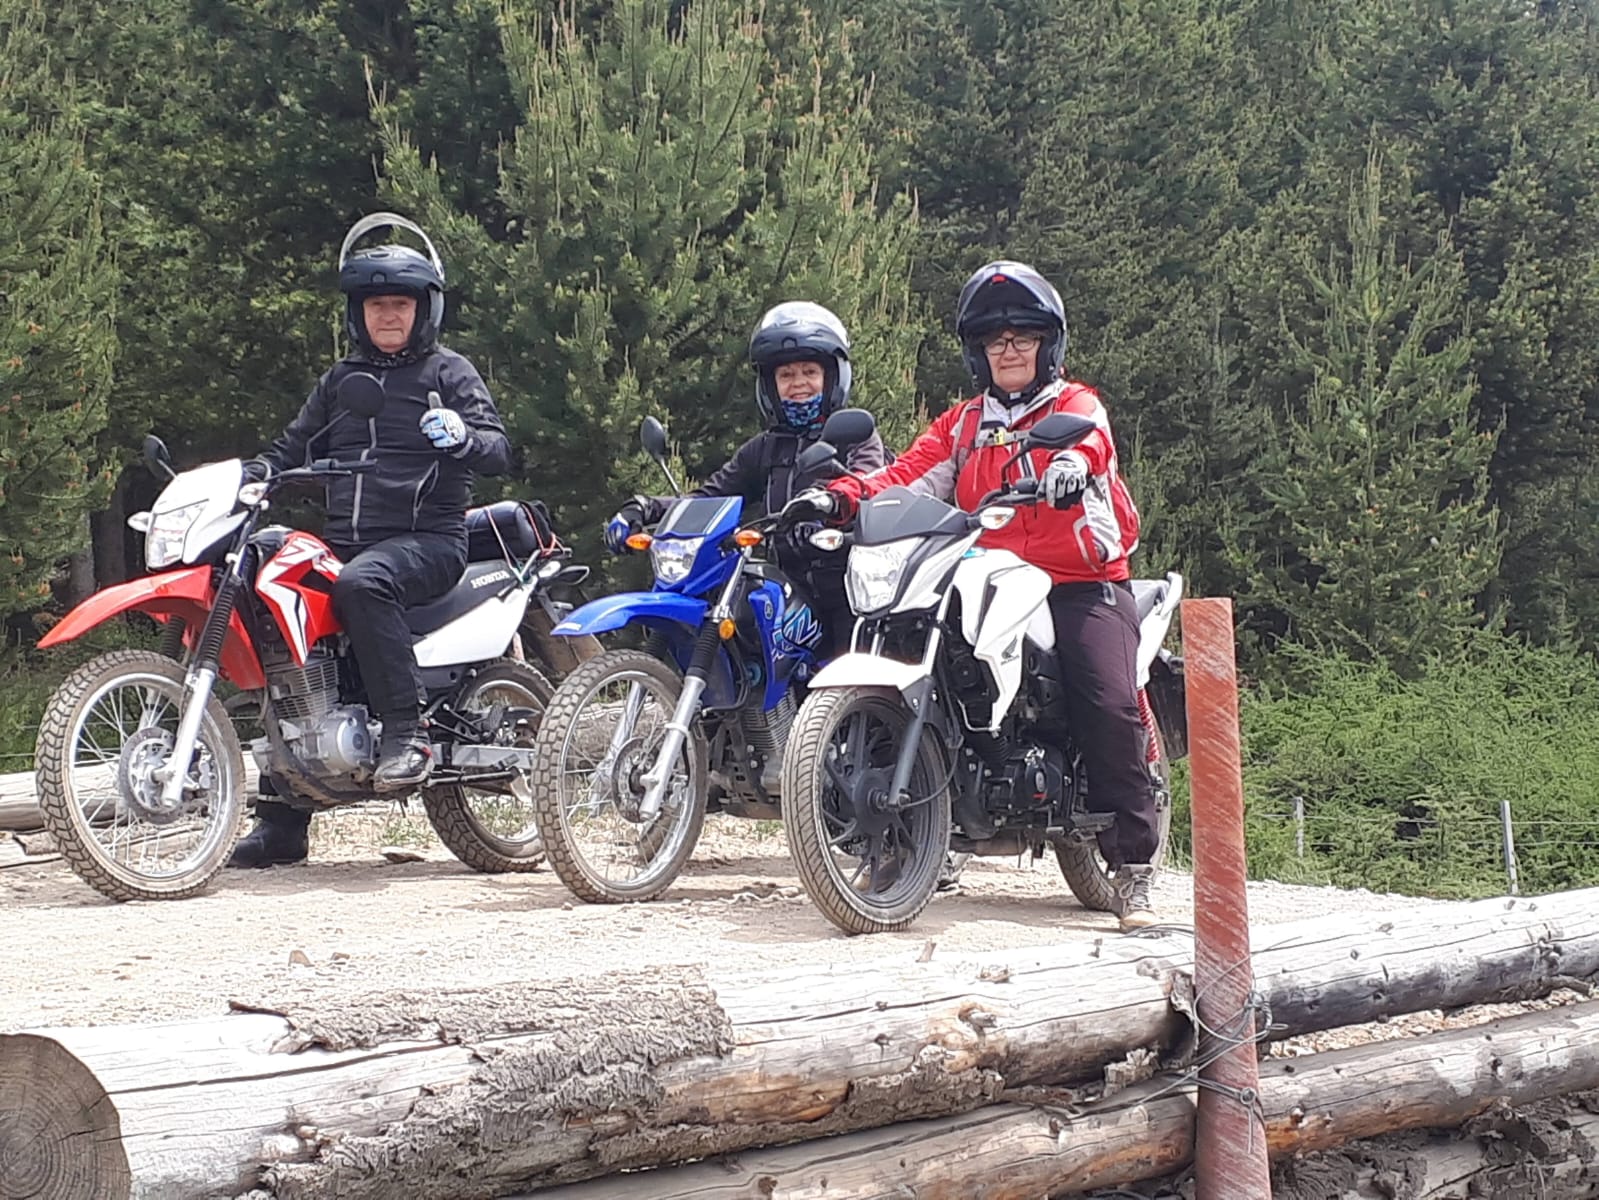 Foto di dicembre 2021, durante un giro in moto da enduro a Bariloche.  La persona sulla moto blu è sua moglie, Maria Cristina.  Accanto a lei c'è una sua amica, Liliana.  Sono tutti in pensione.